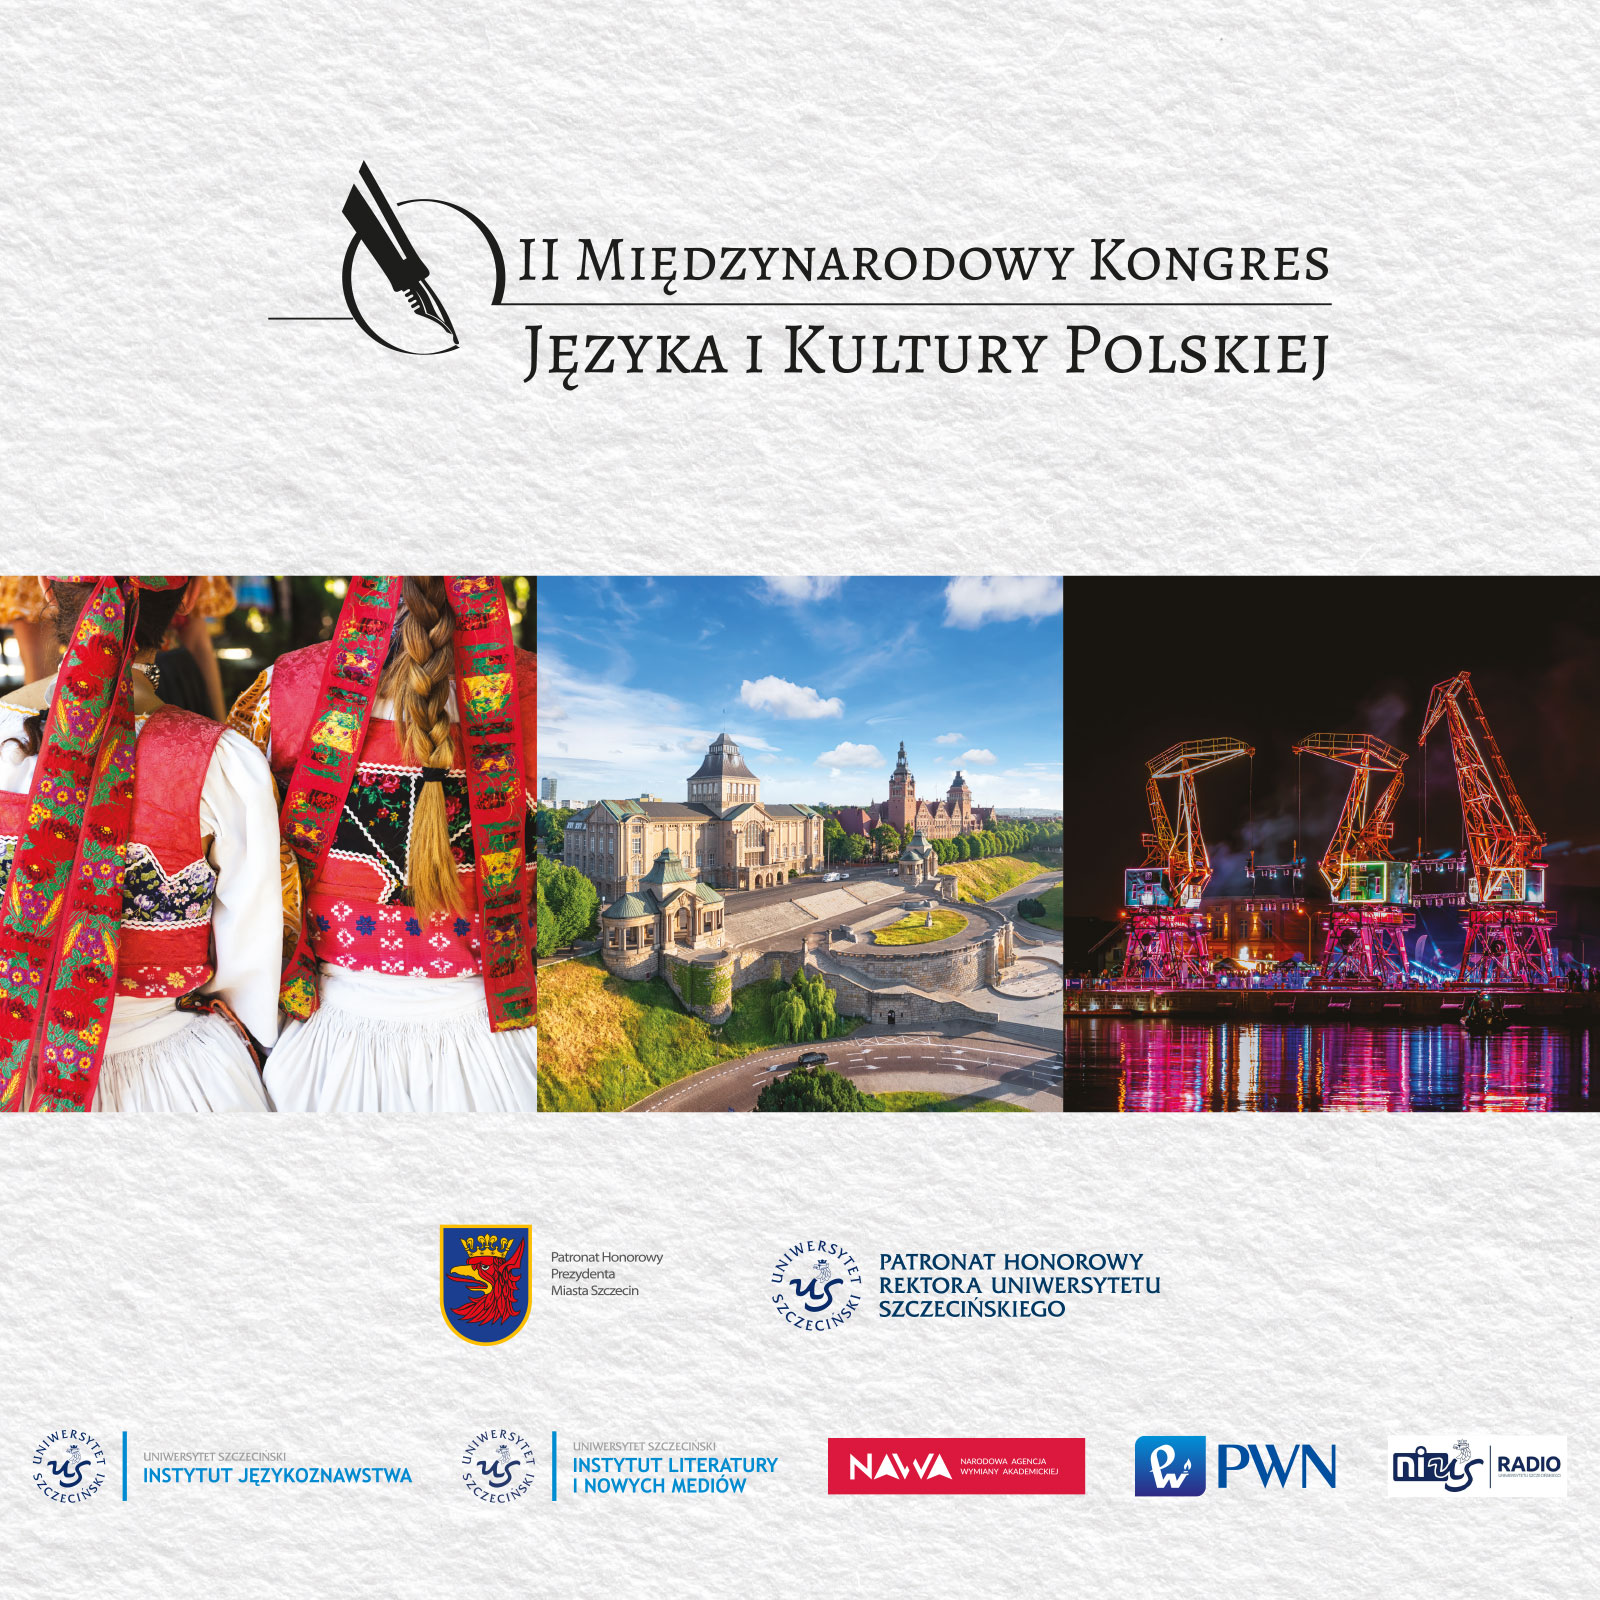 II Międzynarodowy Kongres Języka i Kultury Polskiej